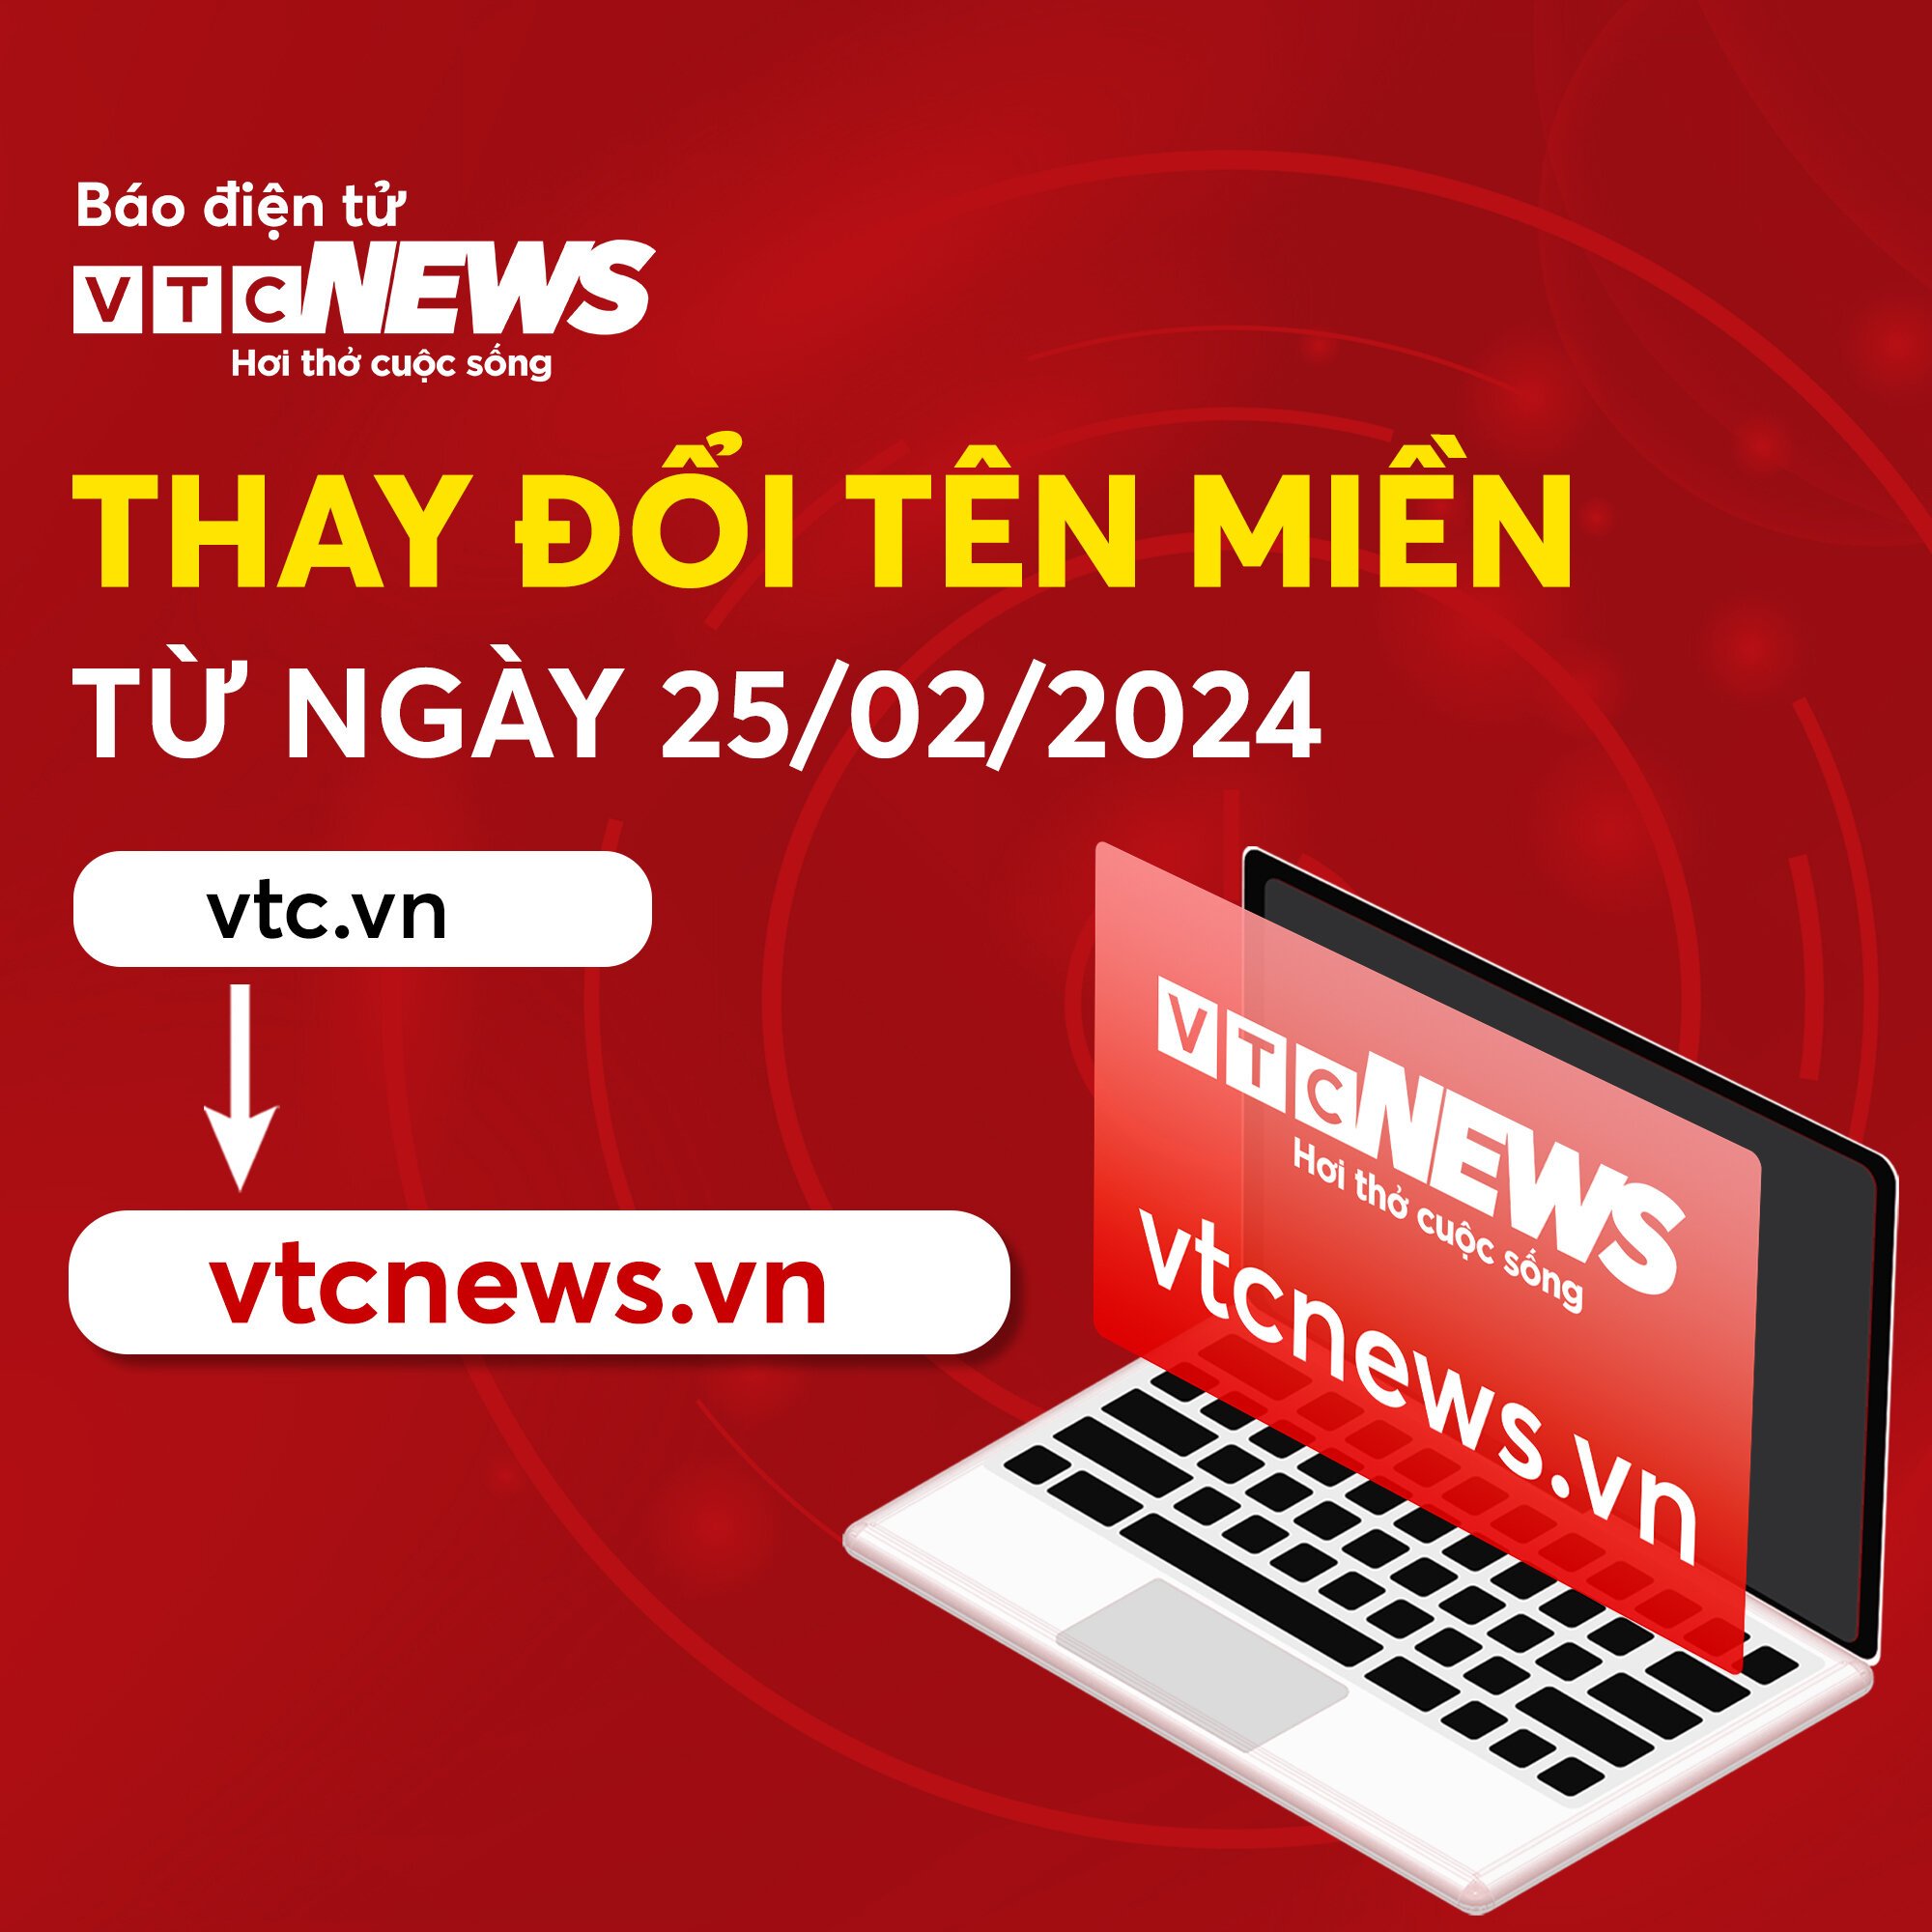 Báo điện tử VTC News đổi tên miền vtc.vn sang vtcnews.vn - Ảnh 1.